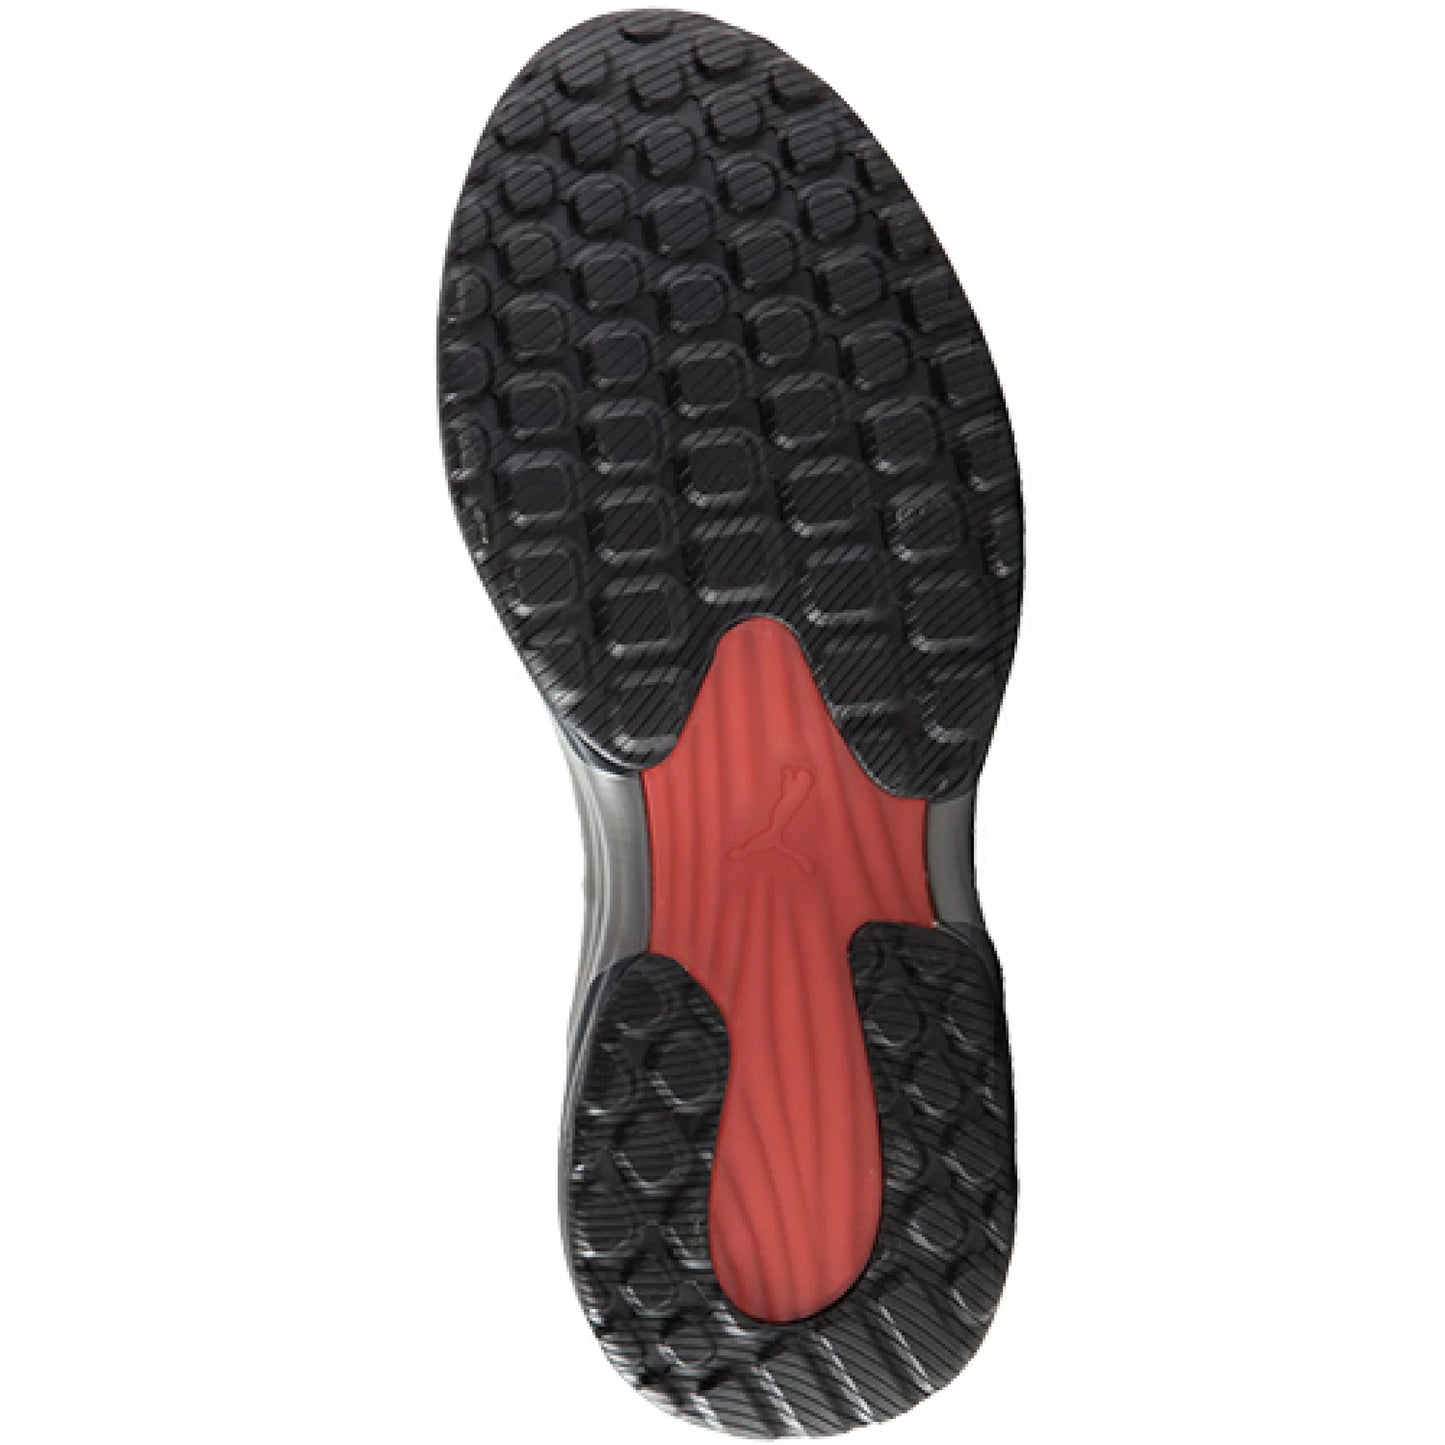 日本 【現貨▪️即寄】Puma 啡色潑水耐熱高筒行山工作安全鞋 25cm US7 EU40